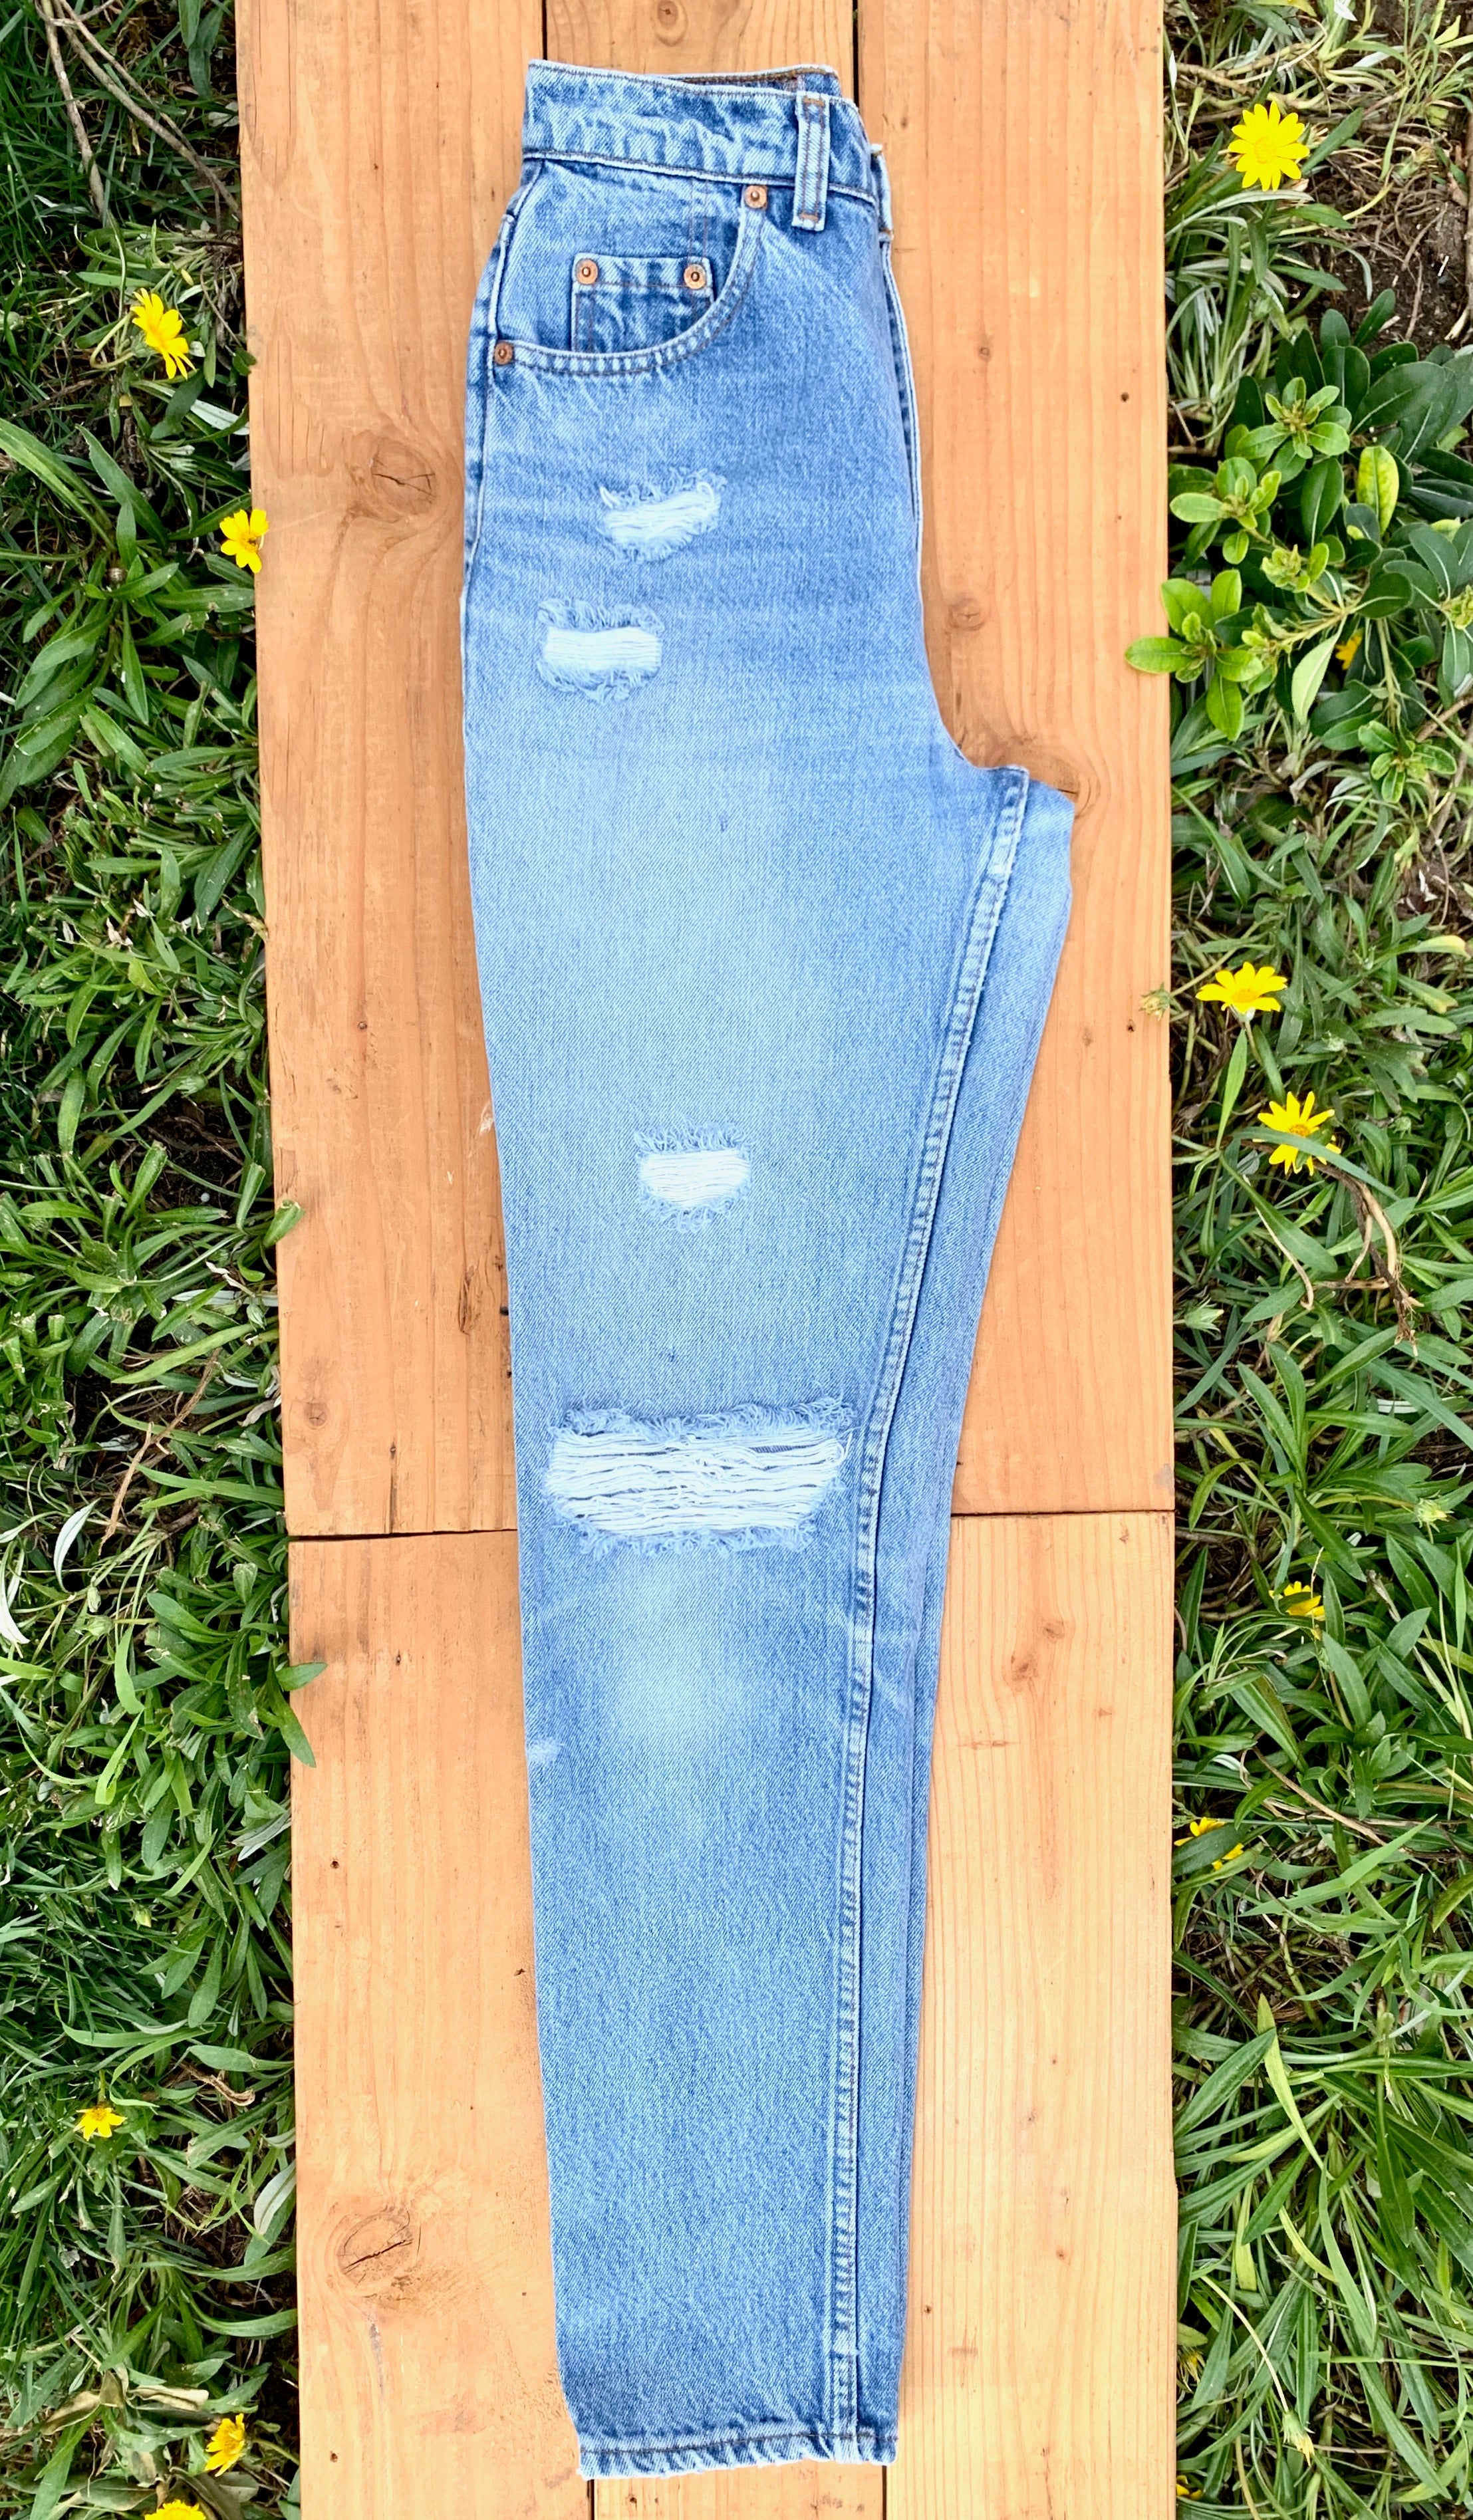 LEVIS 512 High Waisted Slim Fit Light Wash Blue Vintage Jeans